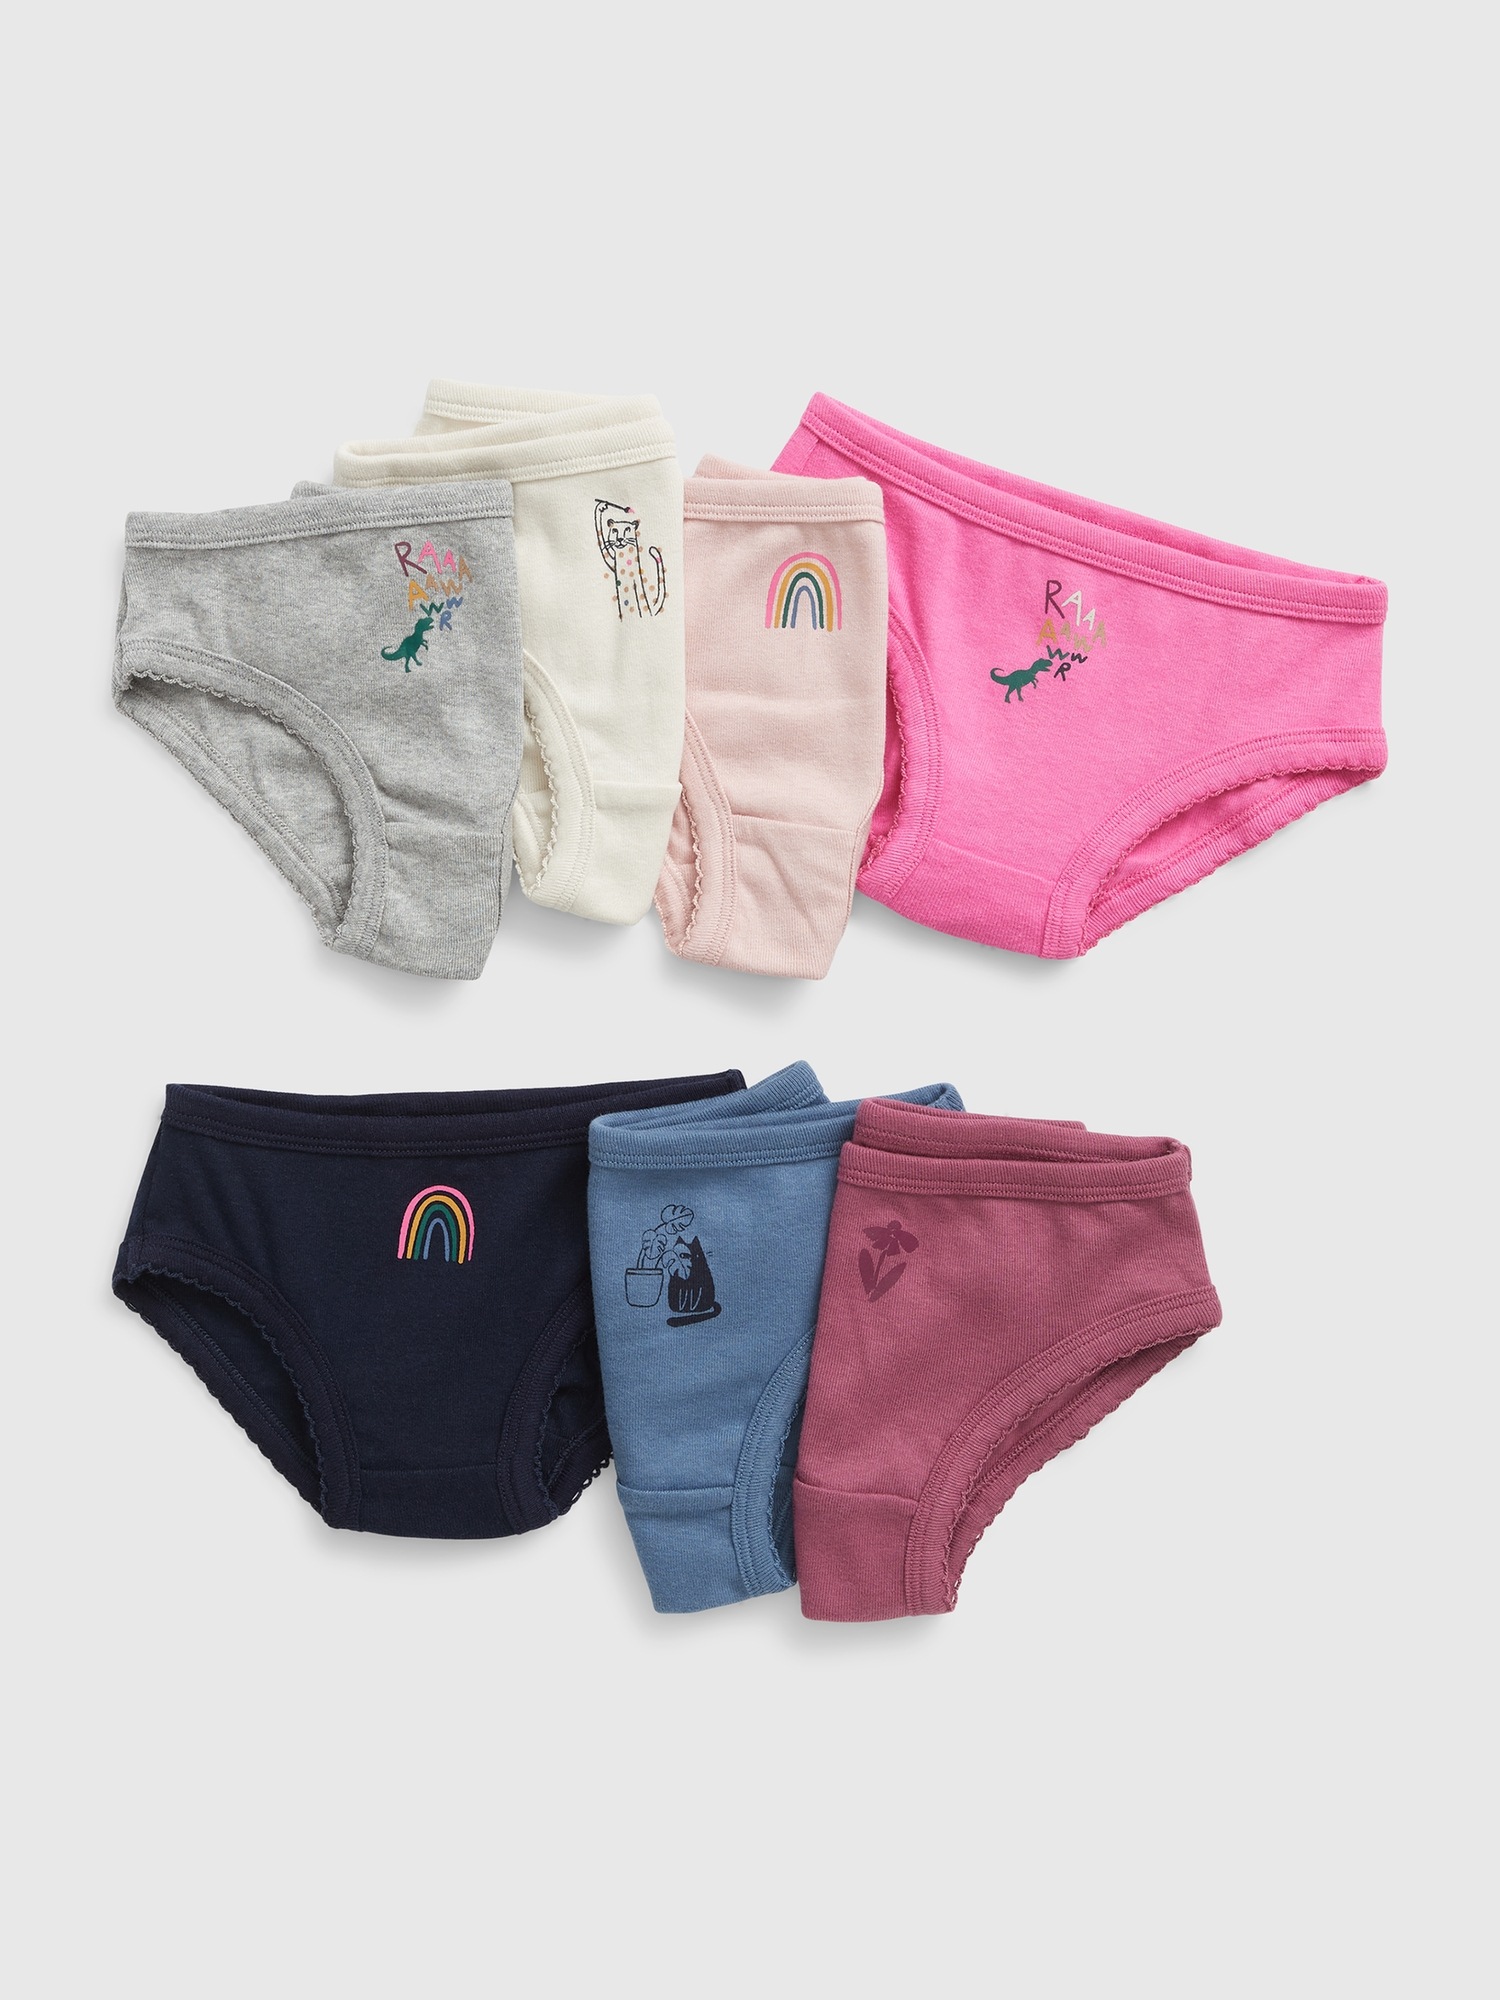 Gap Girls Underwear Minnie Mouse 5 Pack NWT Size 8 Retail $34.95 